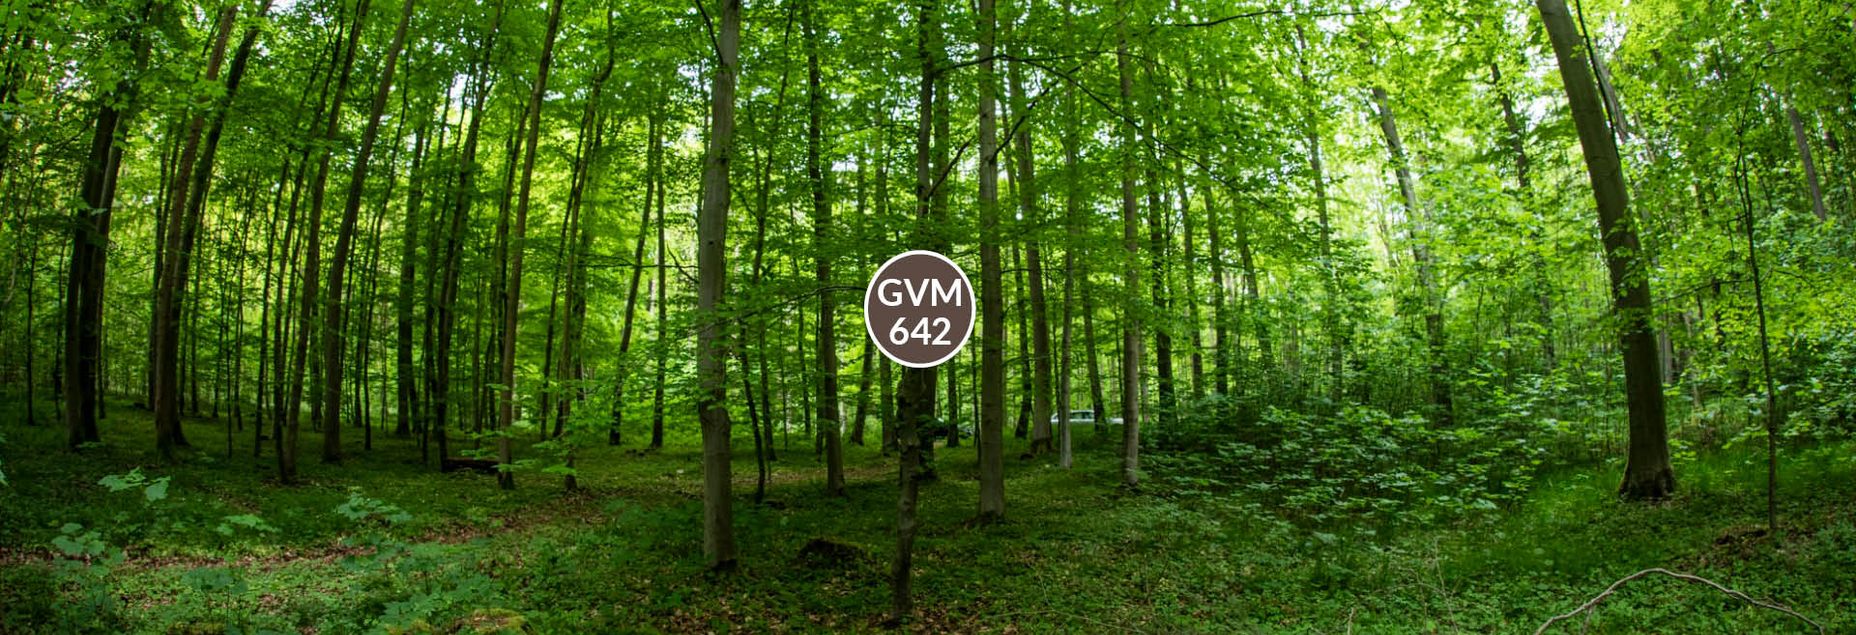 Baum GVM 642 - Fisheyeperspektive